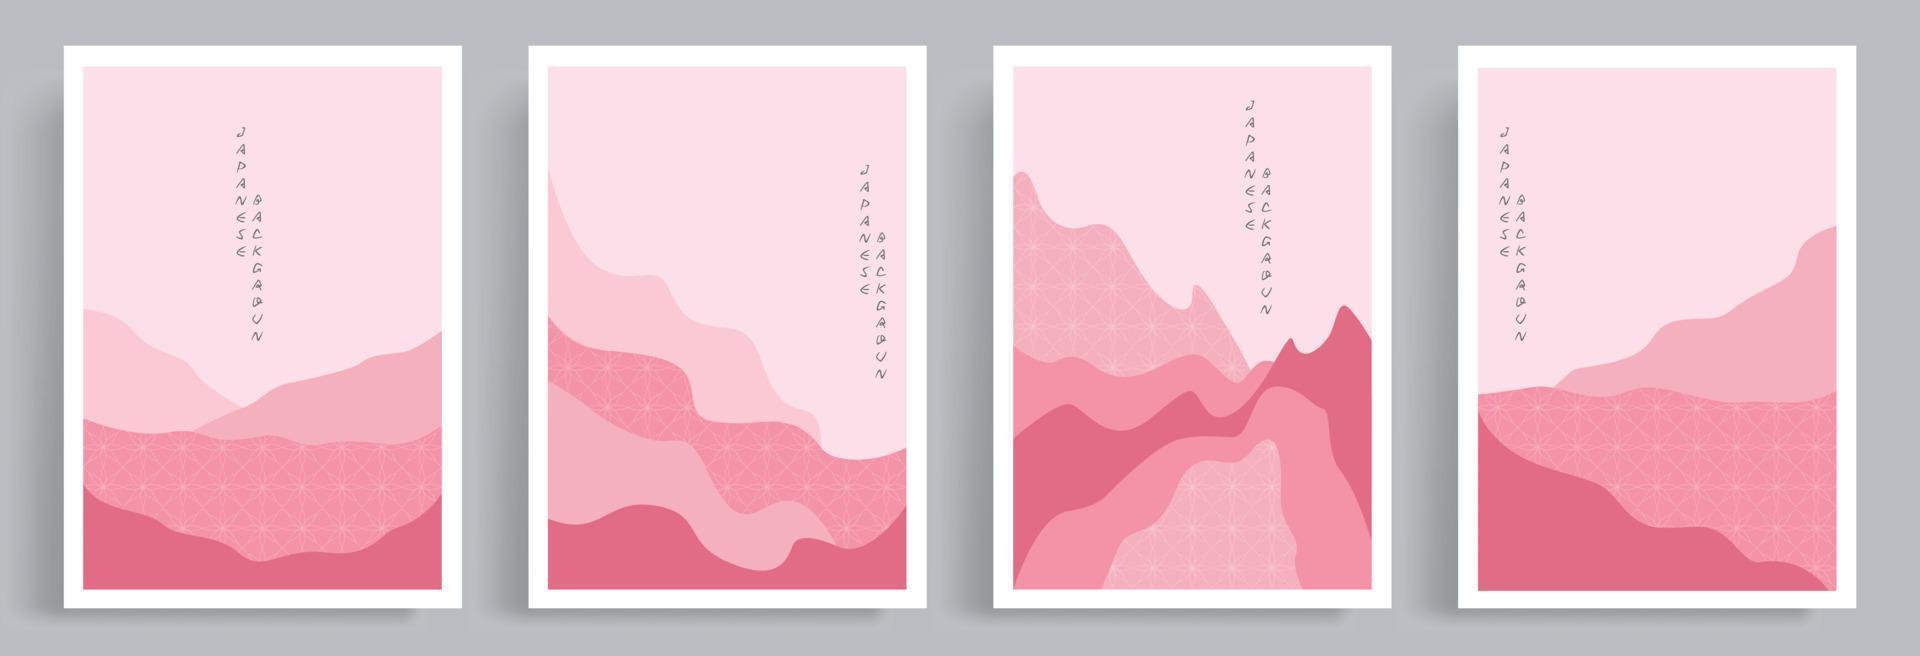 vetor abstrato de artes de parede rosa. artes de estilo oriental japonês com padrão. adequado para impressões emolduradas na parede, folhetos, impressões em tela, pôster, decoração de casa, capa, mídia social, papel de parede.